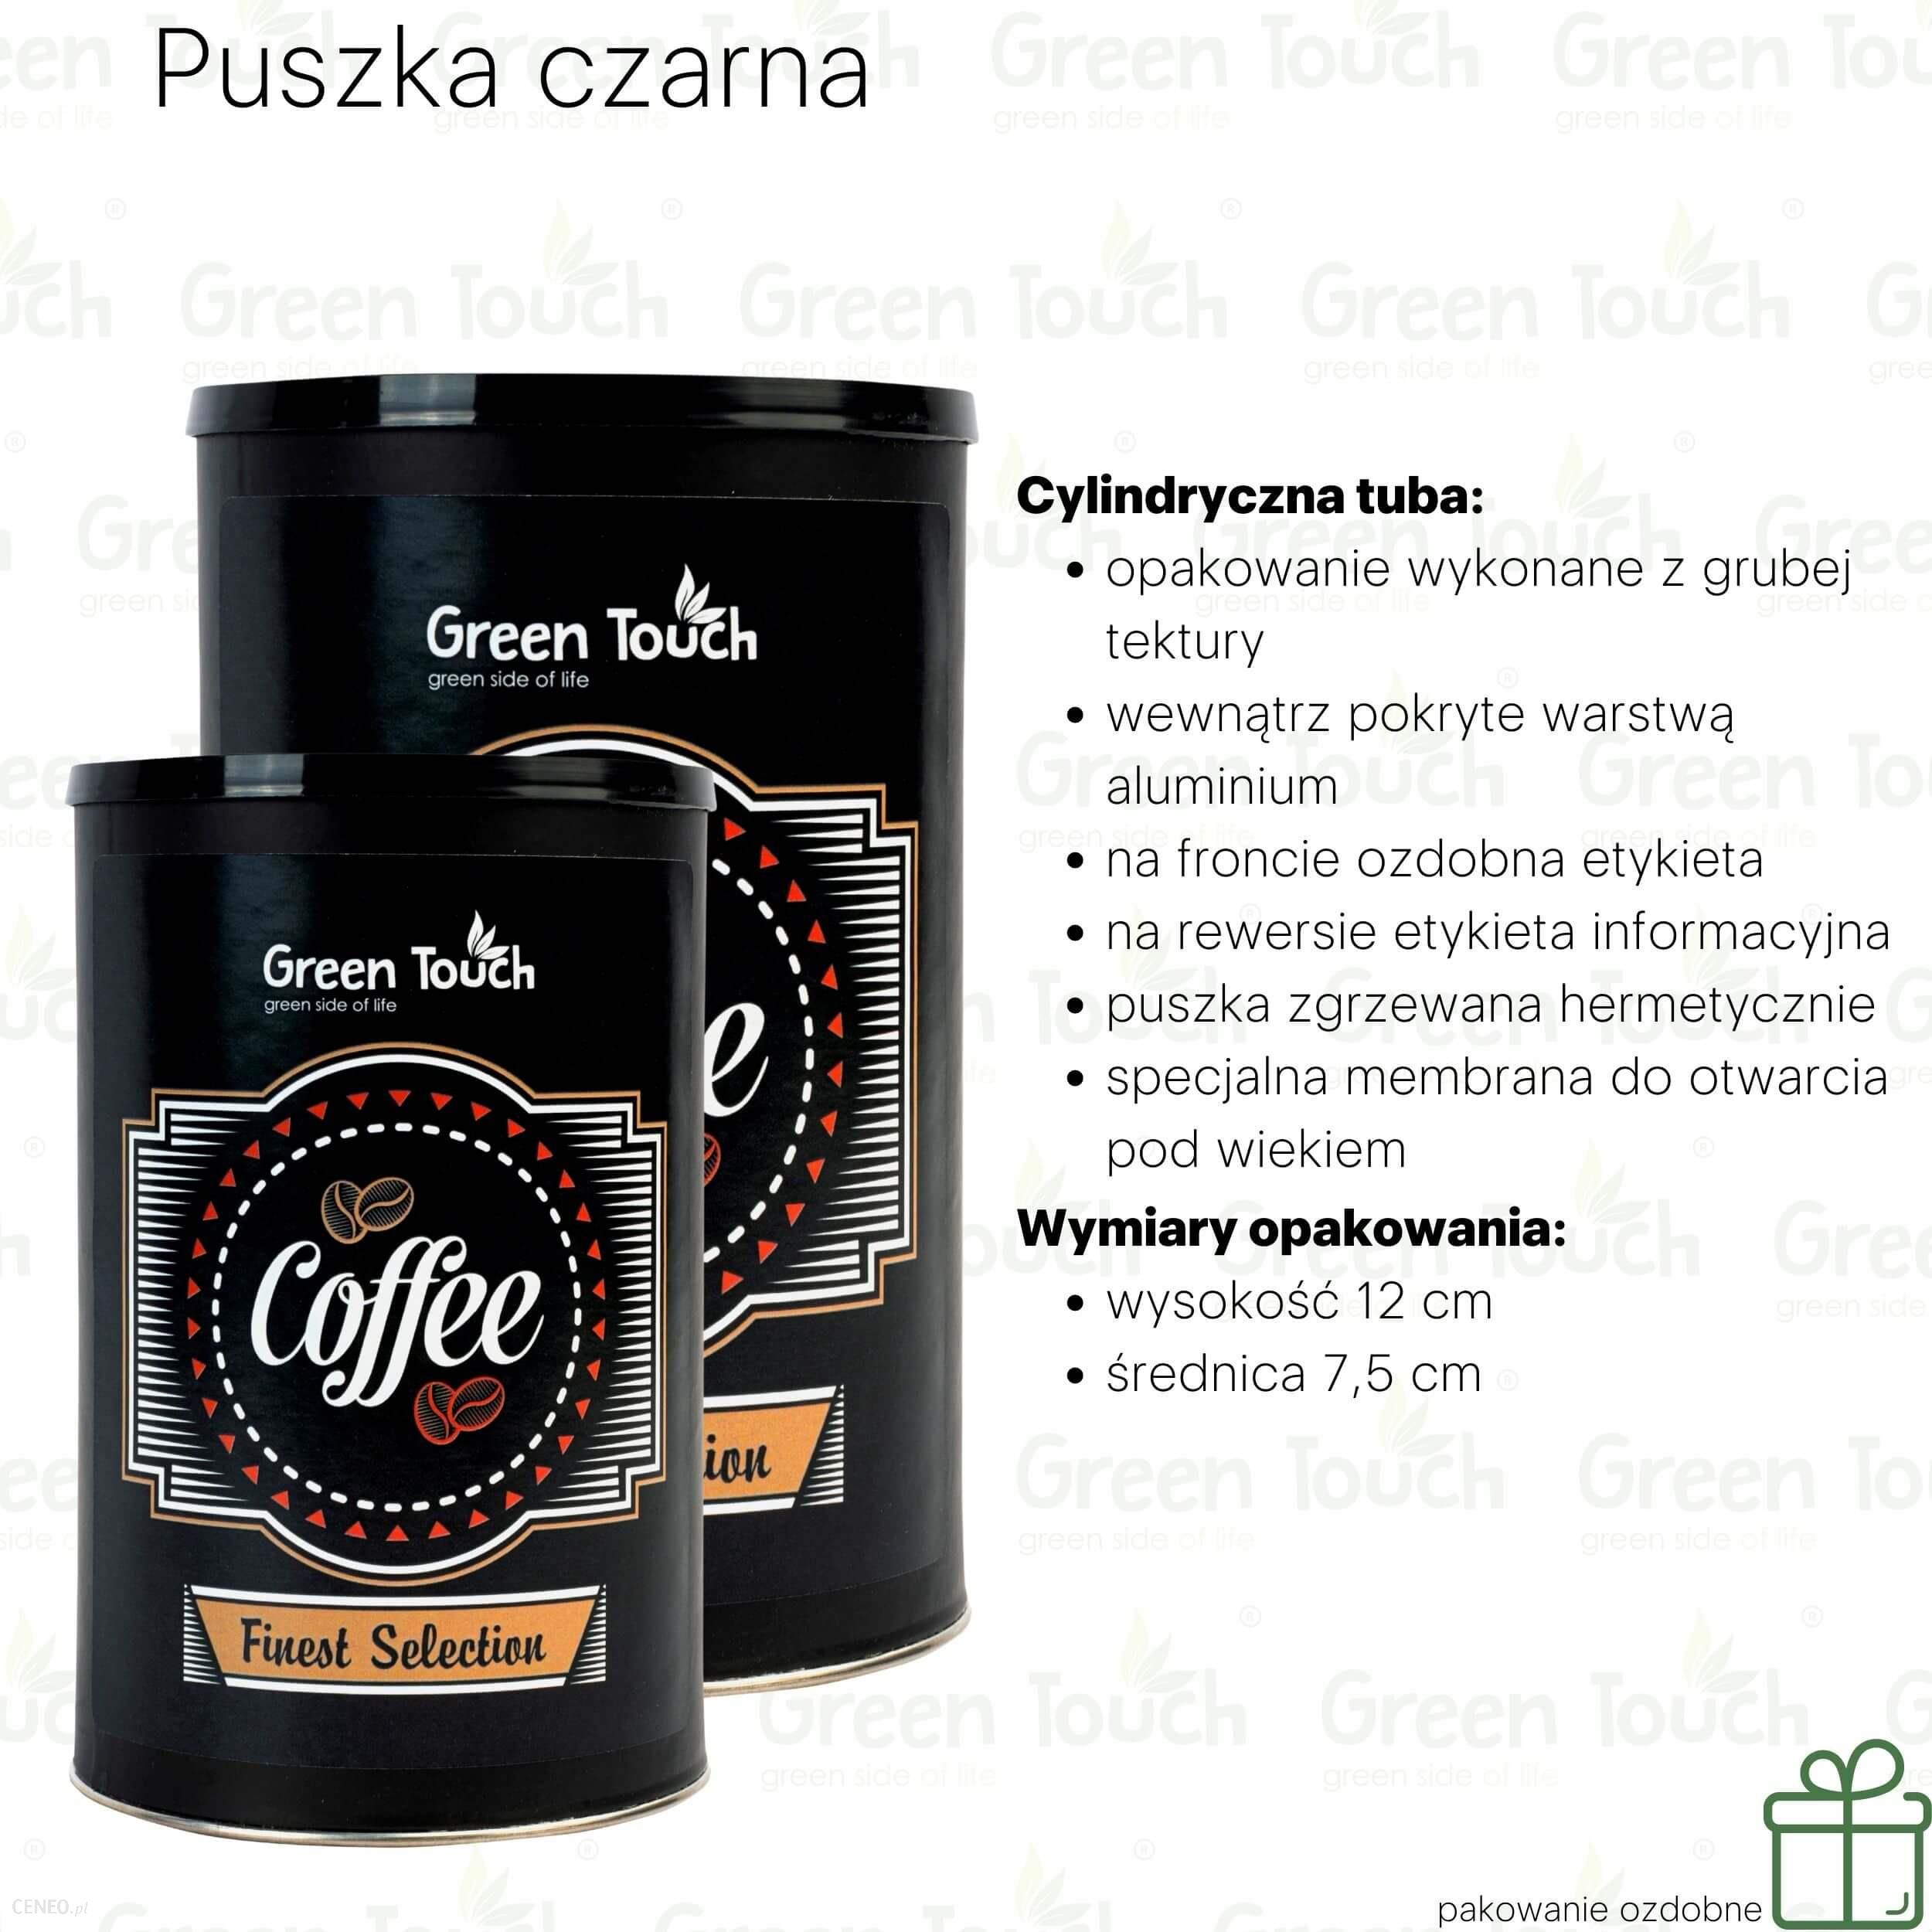 Progressive Kawa ziarnista malinowa (Pakowanie ozdobne, Puszka czarna 140g)